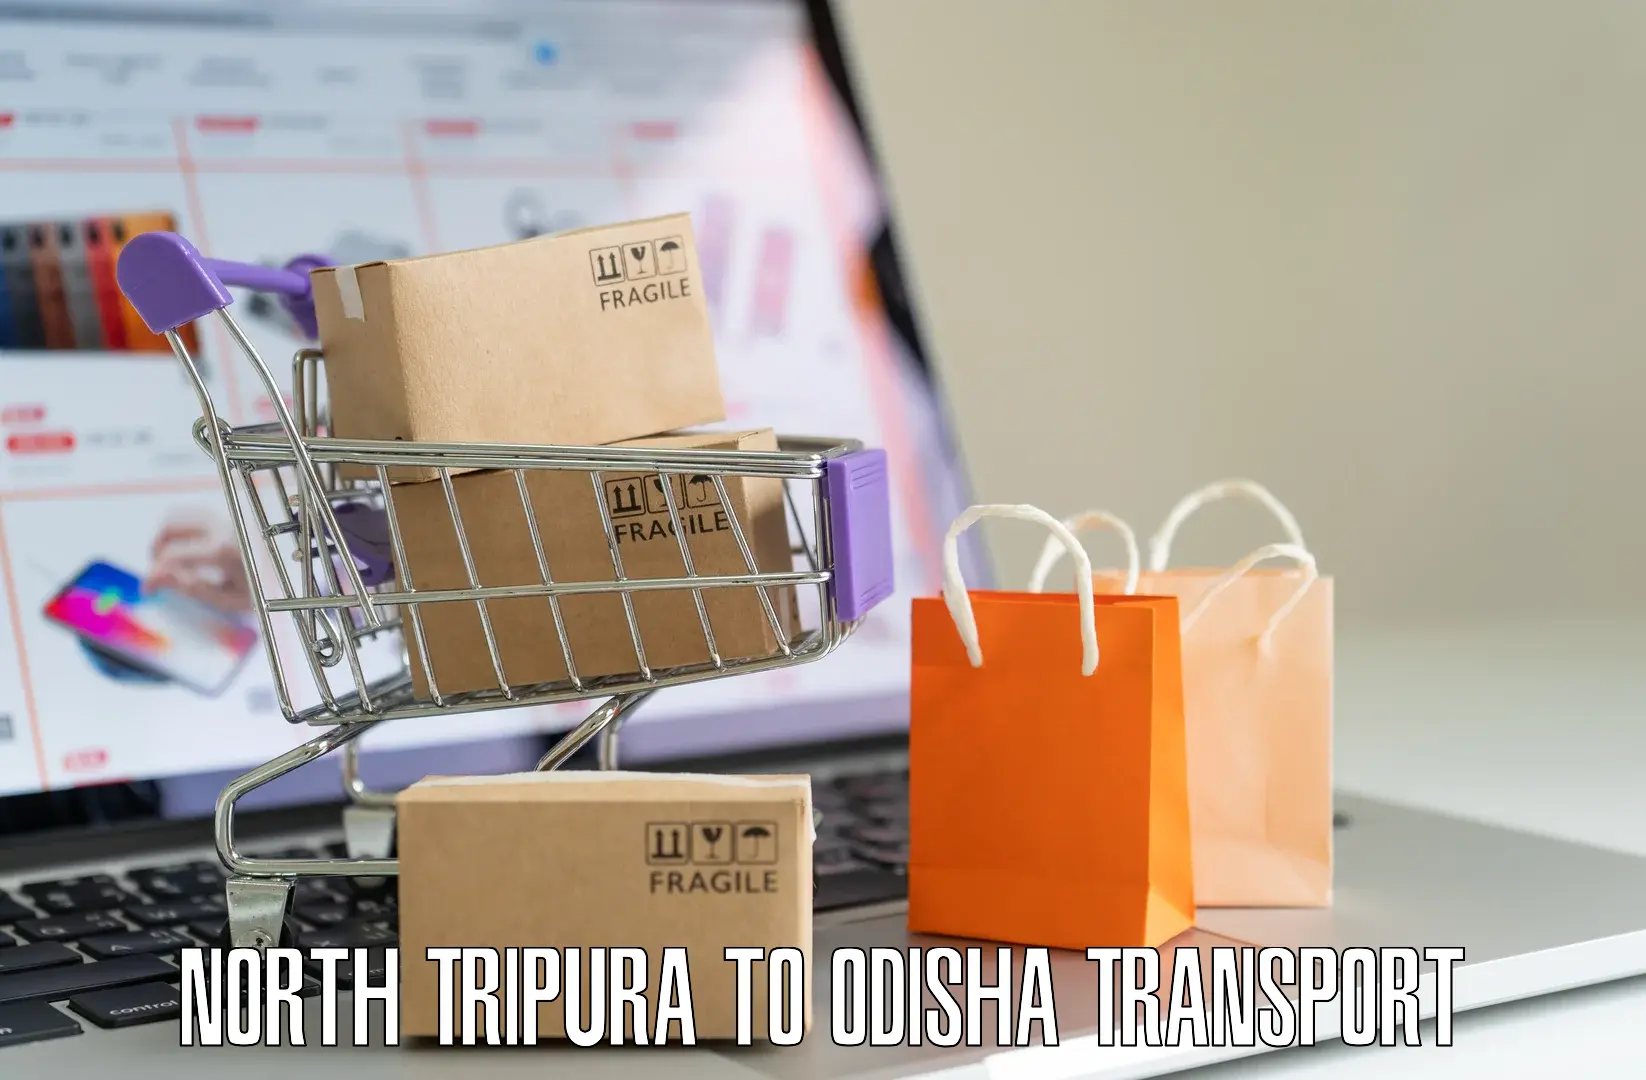 Material transport services North Tripura to Patkura